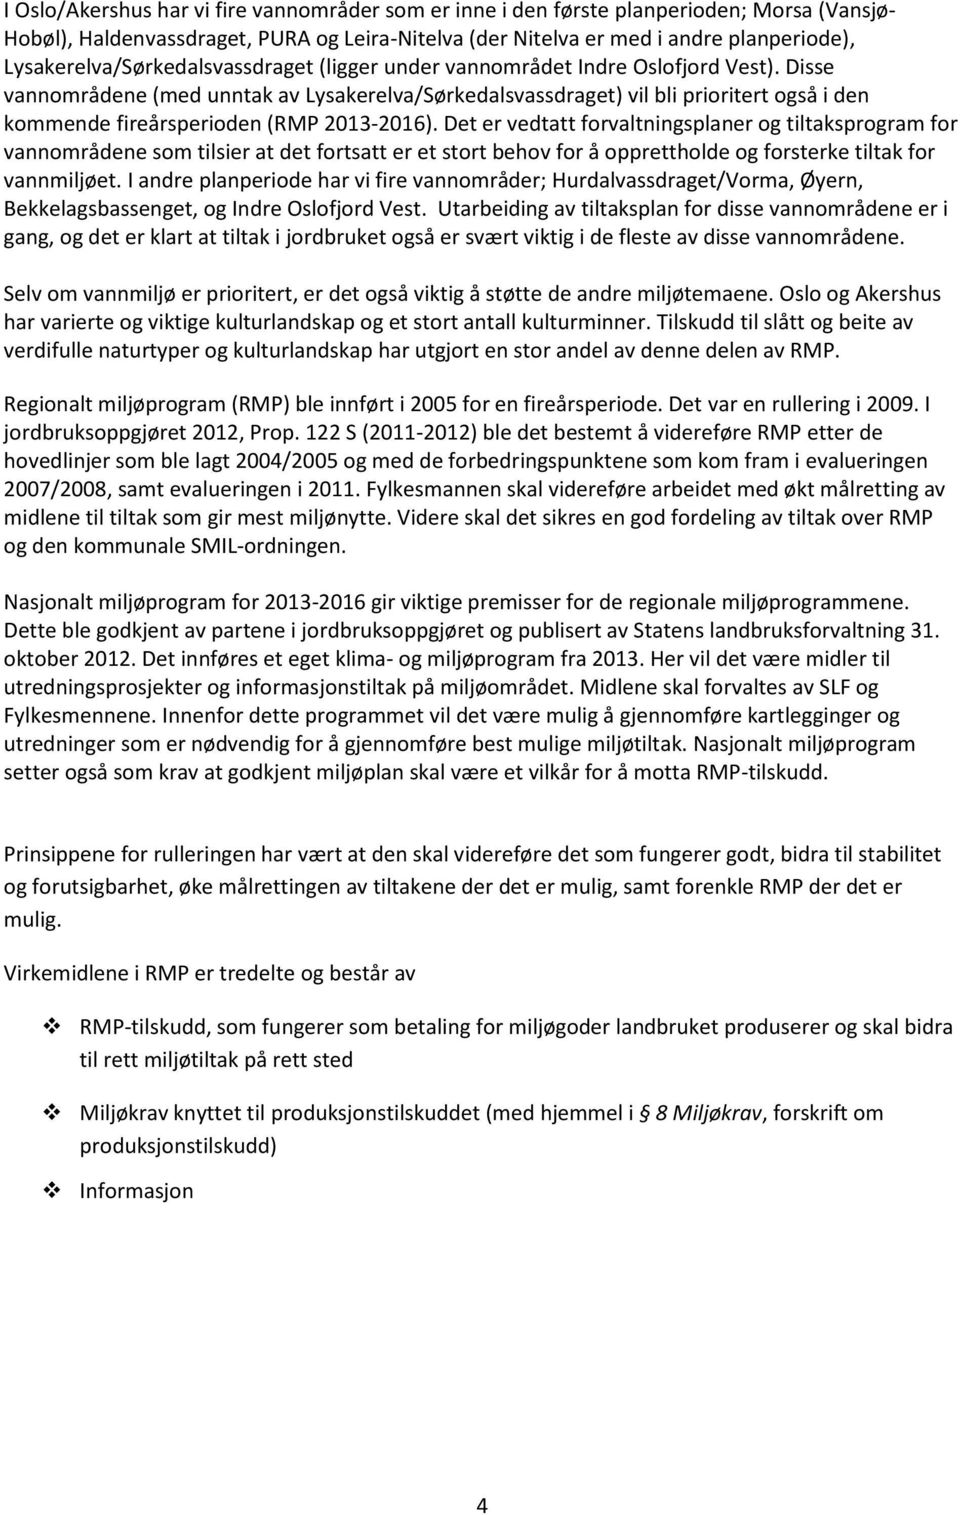 Disse vannområdene (med unntak av Lysakerelva/Sørkedalsvassdraget) vil bli prioritert også i den kommende fireårsperioden (RMP 2013-2016).